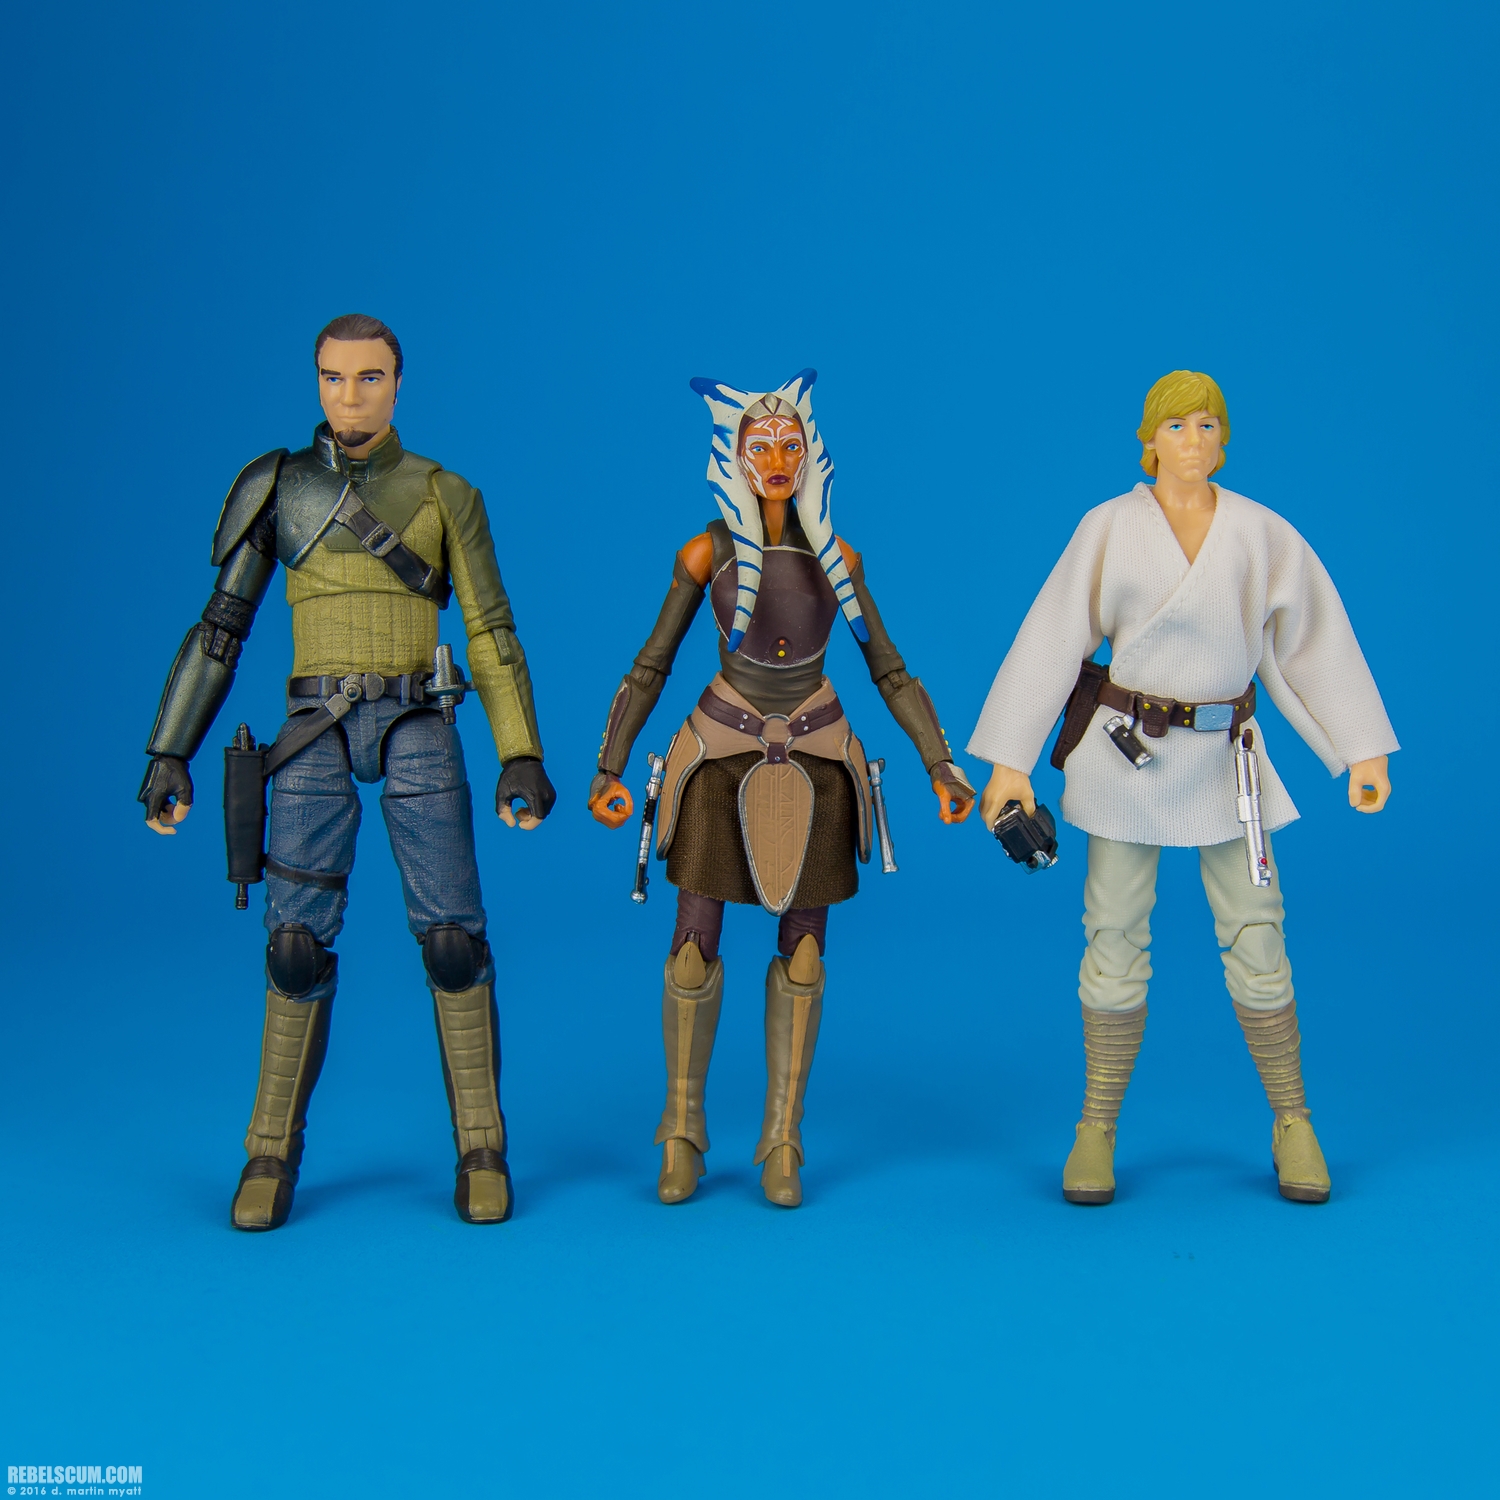 Luke-Skywalker-21-The-Black-Series-Star-Wars-Rebels-Hasbro-013.jpg